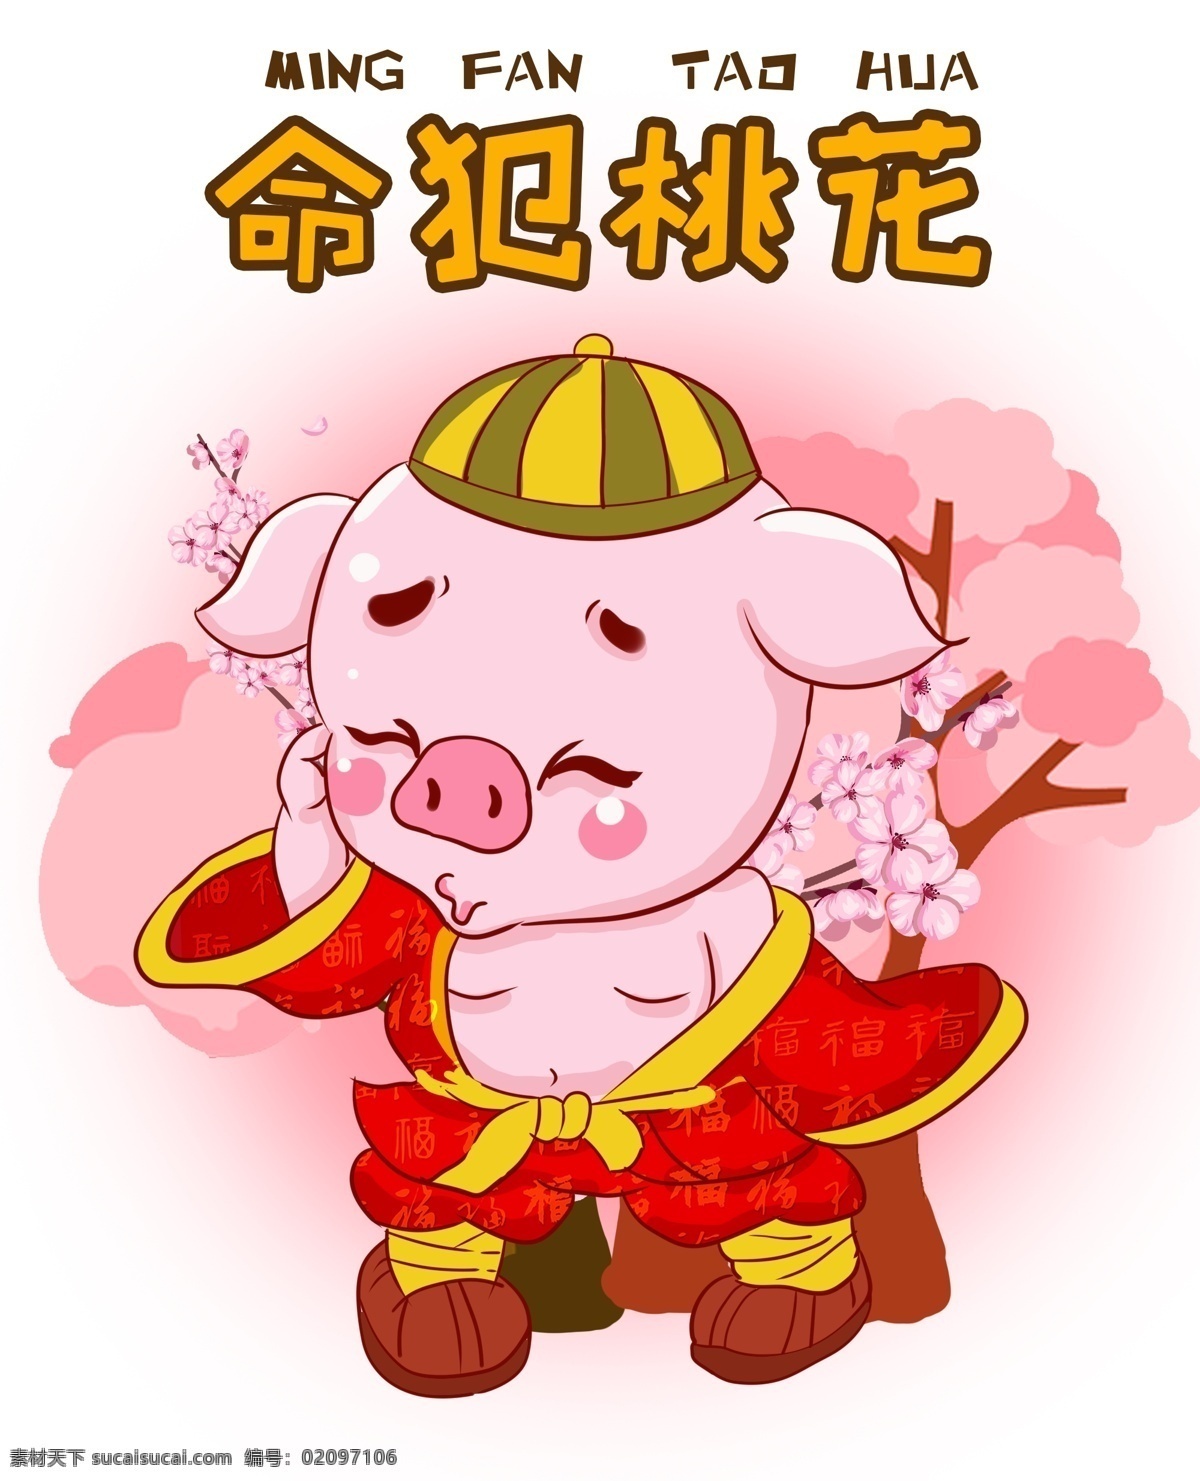 猪 祝福 桃花运 卡通 插画 贺 新年 猪猪福气满满 吃喝 不 愁 上上 签 猪猪祝福躺赚 发大财